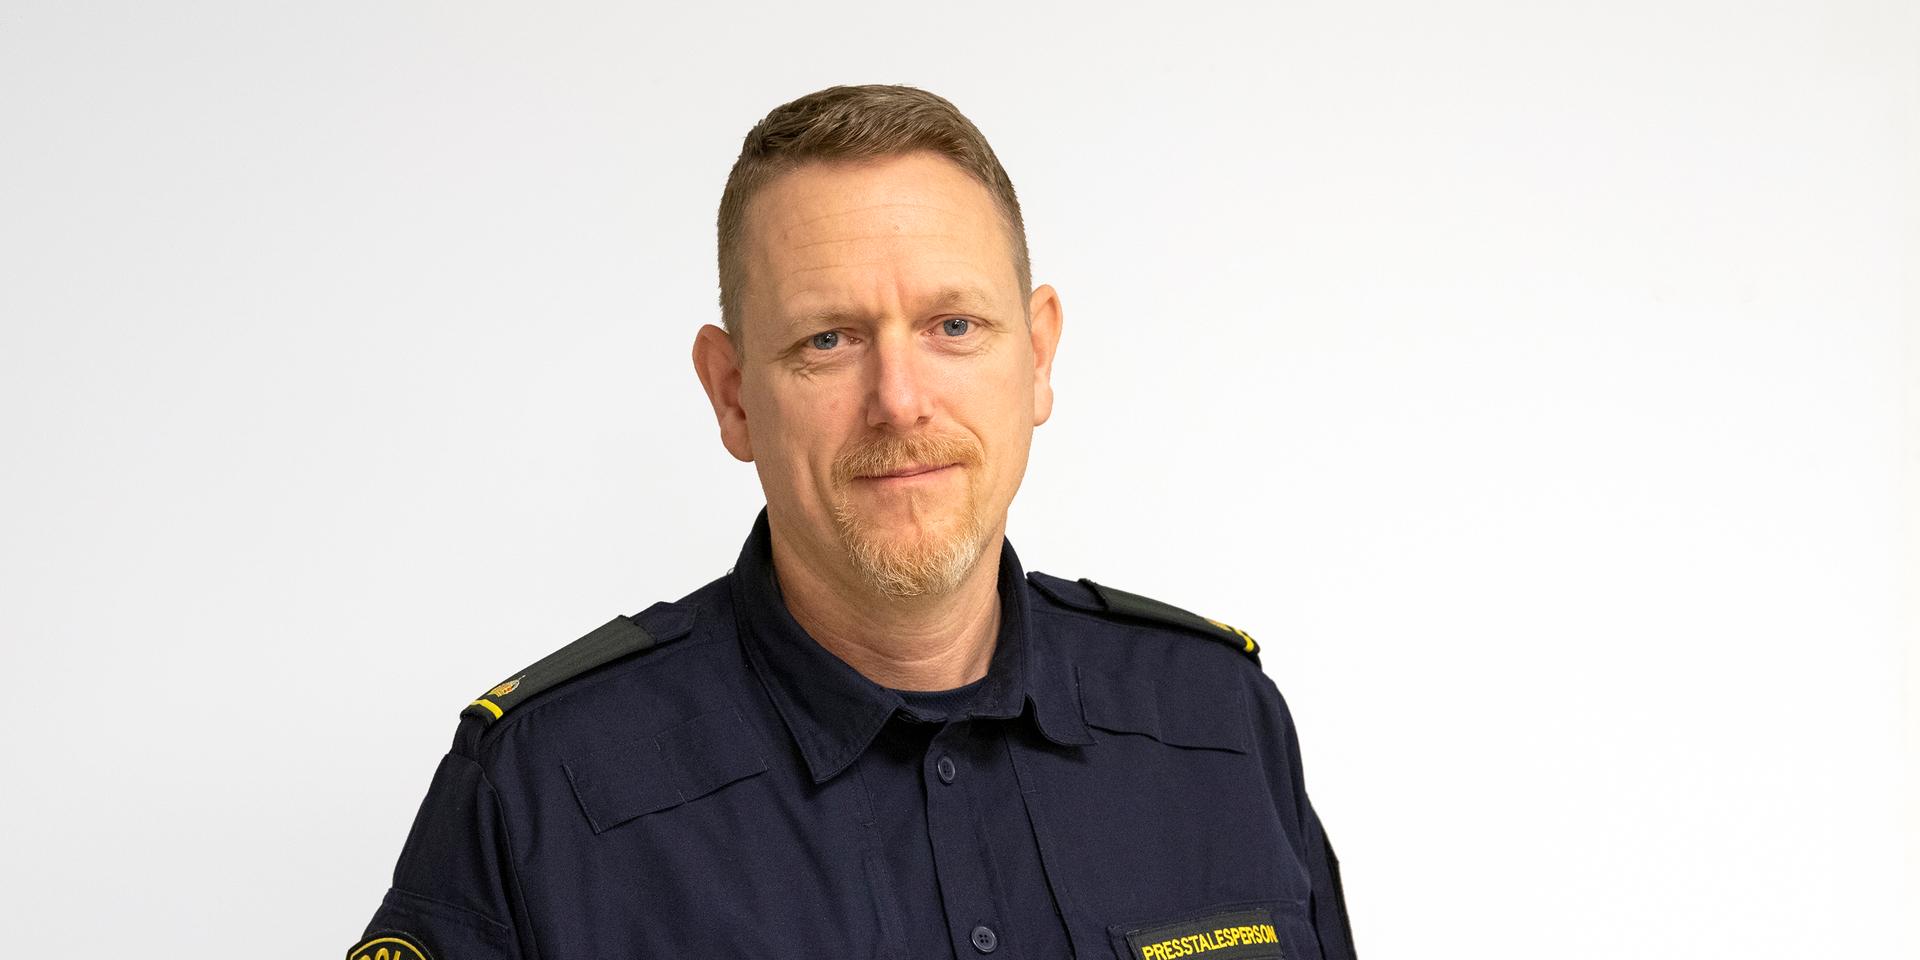 Hans-Jörgen Ostler, polisens presstalesperson i region Väst.